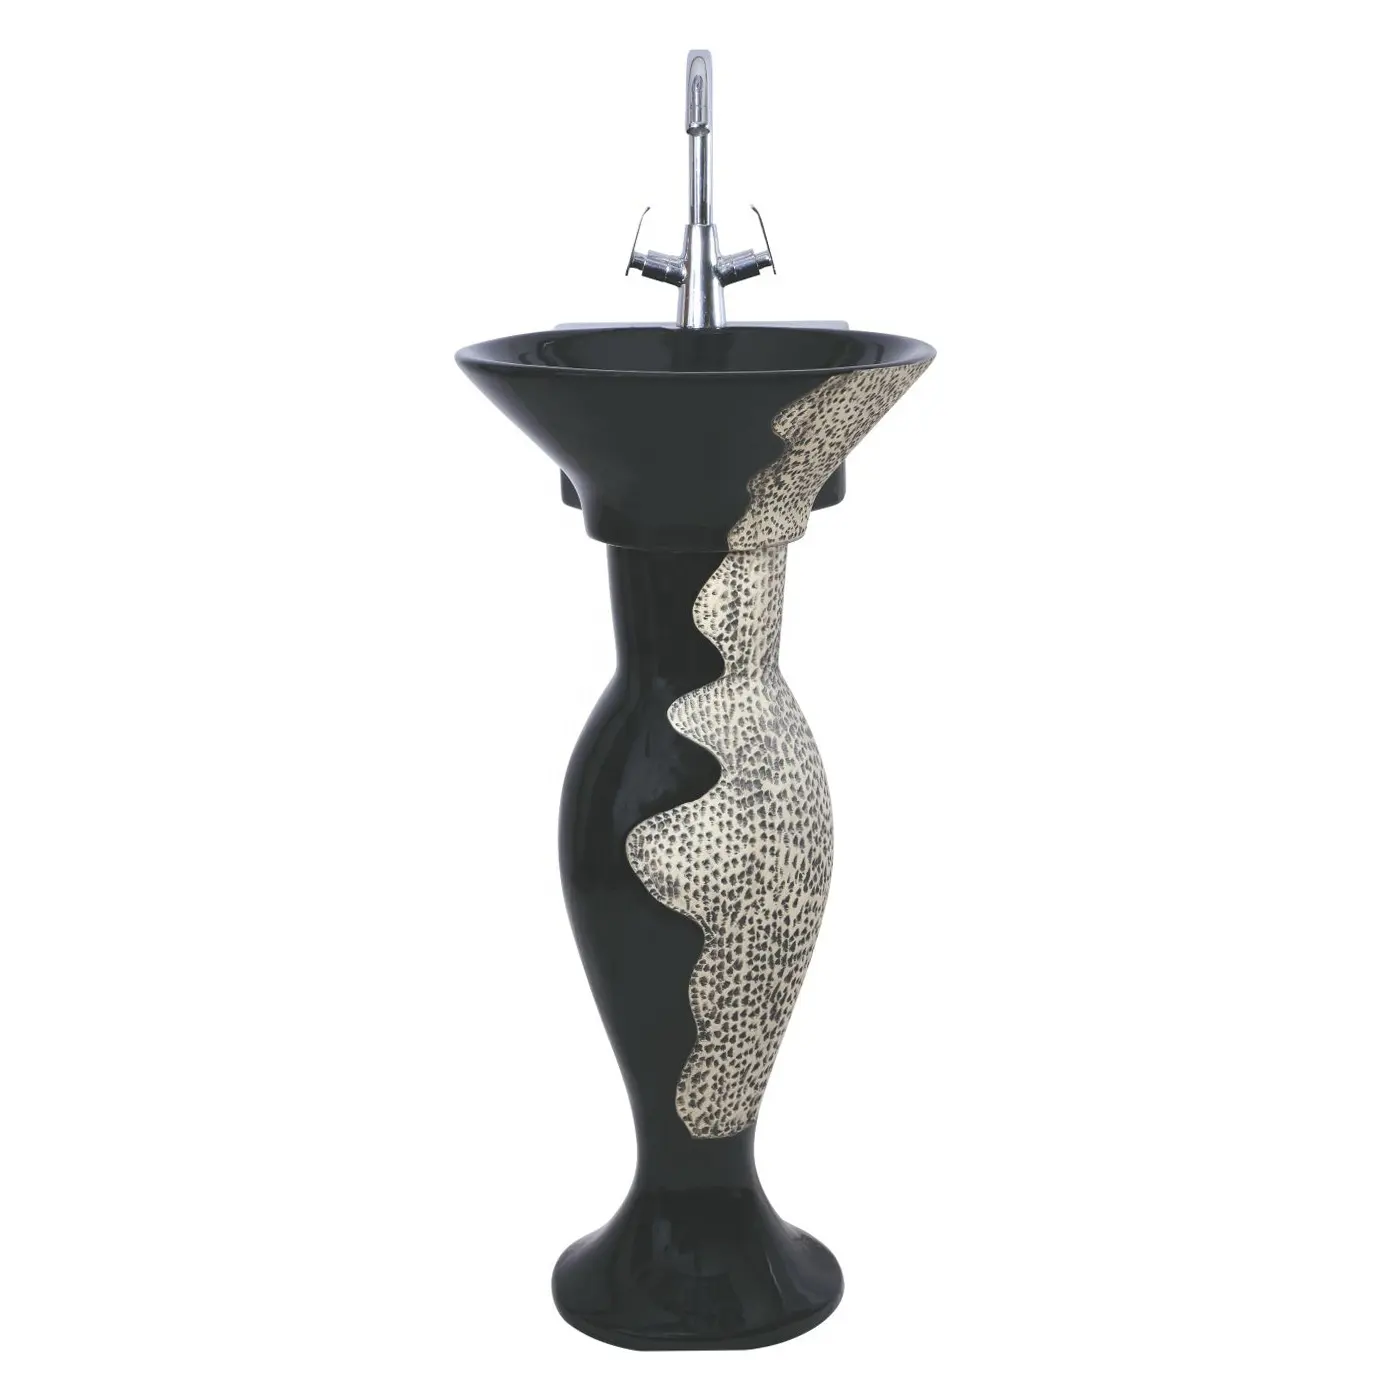 Lavabo moderno de cerámica para baño, cuenco de agua de piedra de mármol Natural gris, Lavabo, mesa de lavado de inodoro, lavabos de Pedestal